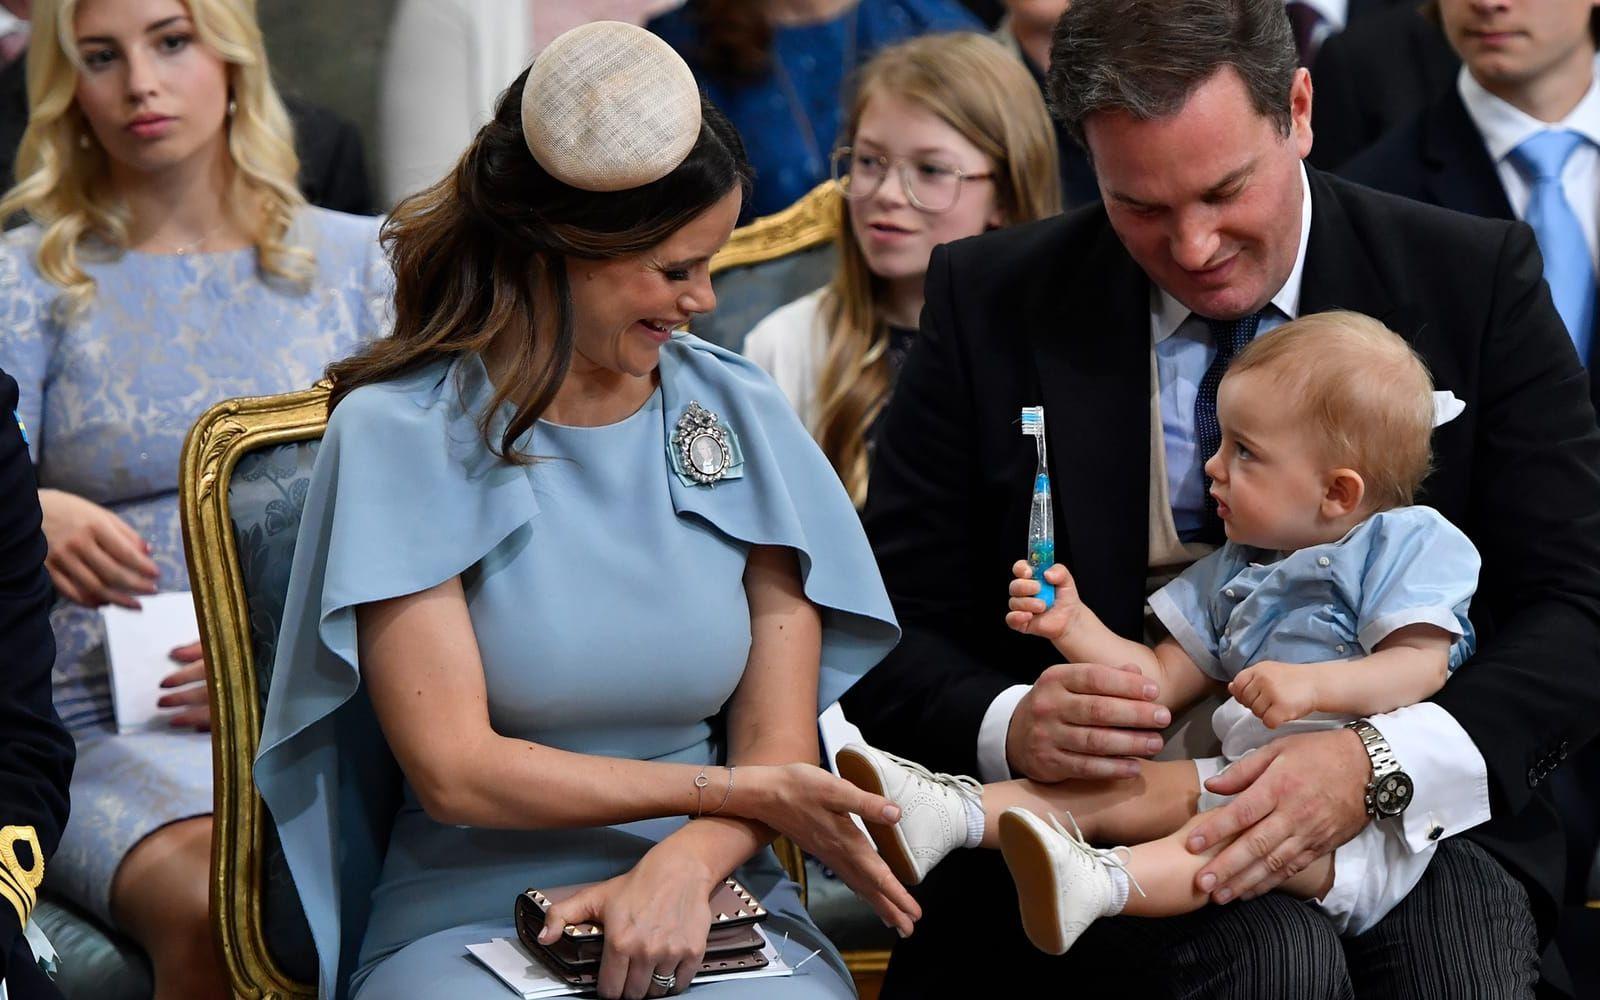 27 maj: Glöm inte tandborsten! Prins Nicolas charmar sin omgivning medan han sitter i pappa Chris O’Neills knä under kusindopet. Foto: TT